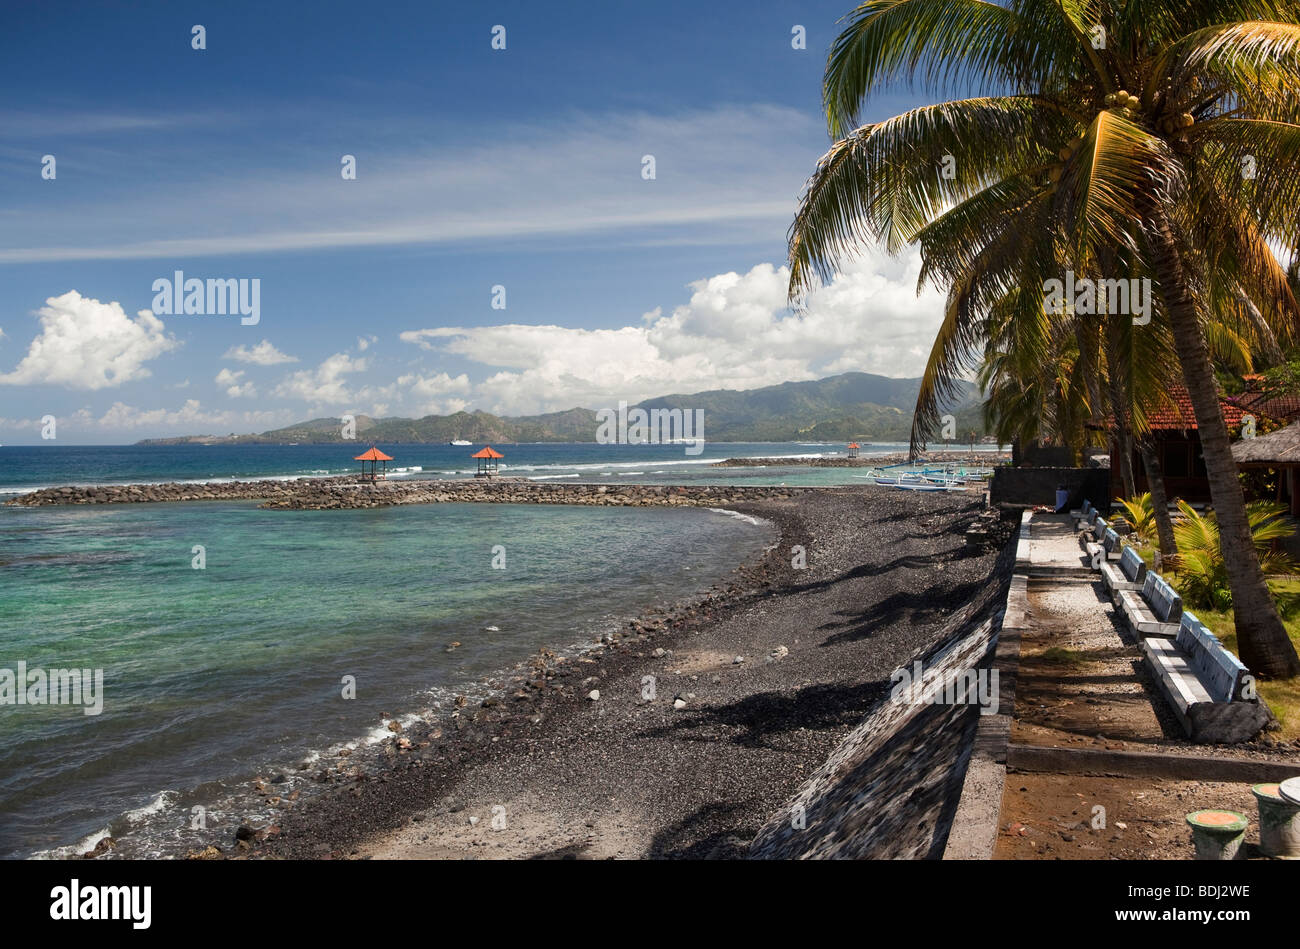 Indonesia, Bali, Candidasa, frangiflutti artificiale costruito per proteggere la spiaggia rimane Foto Stock